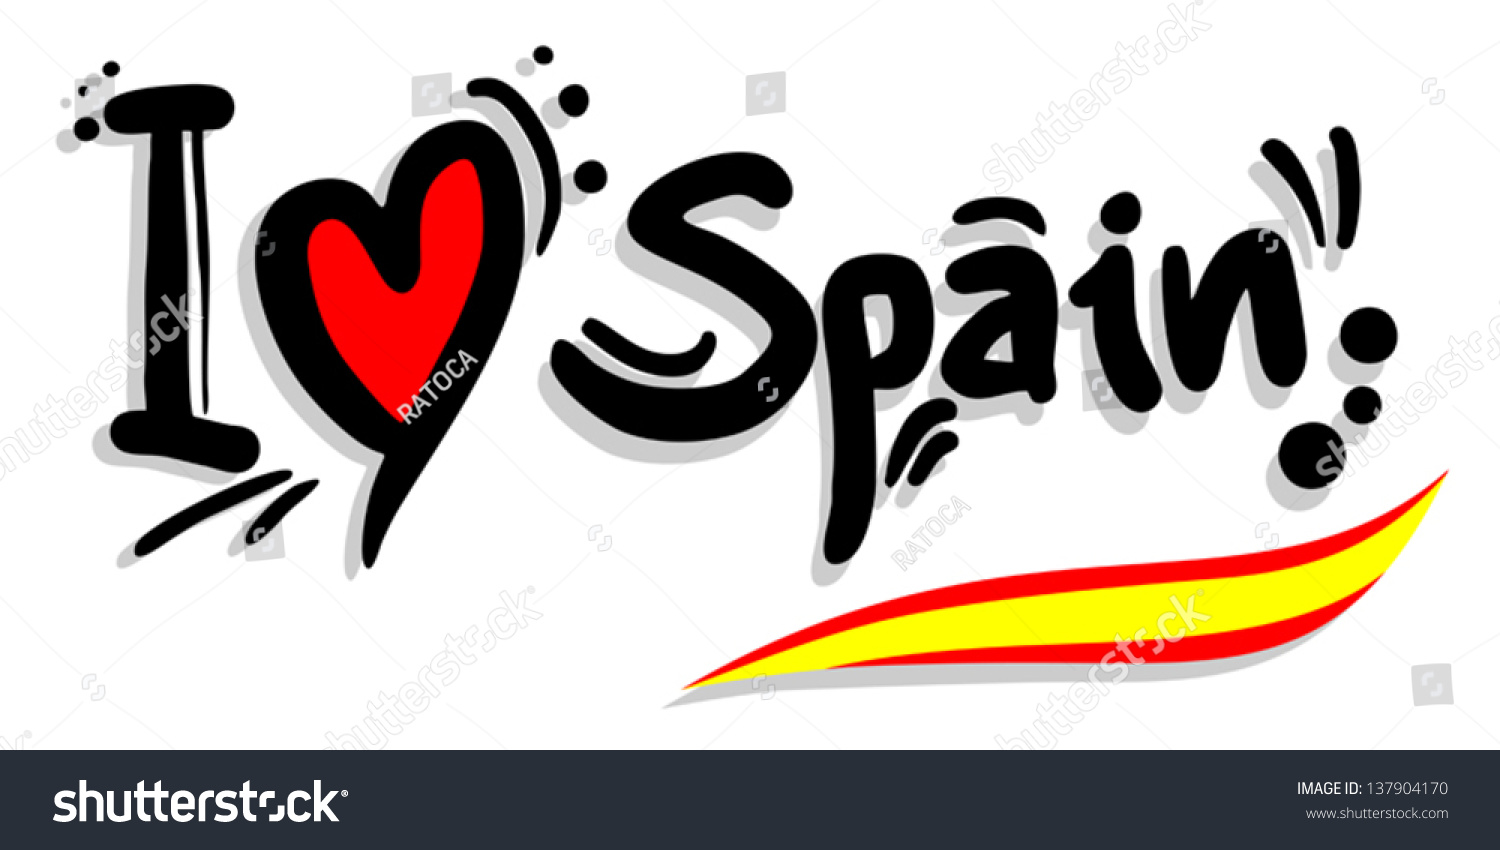 день испанского языка картинки